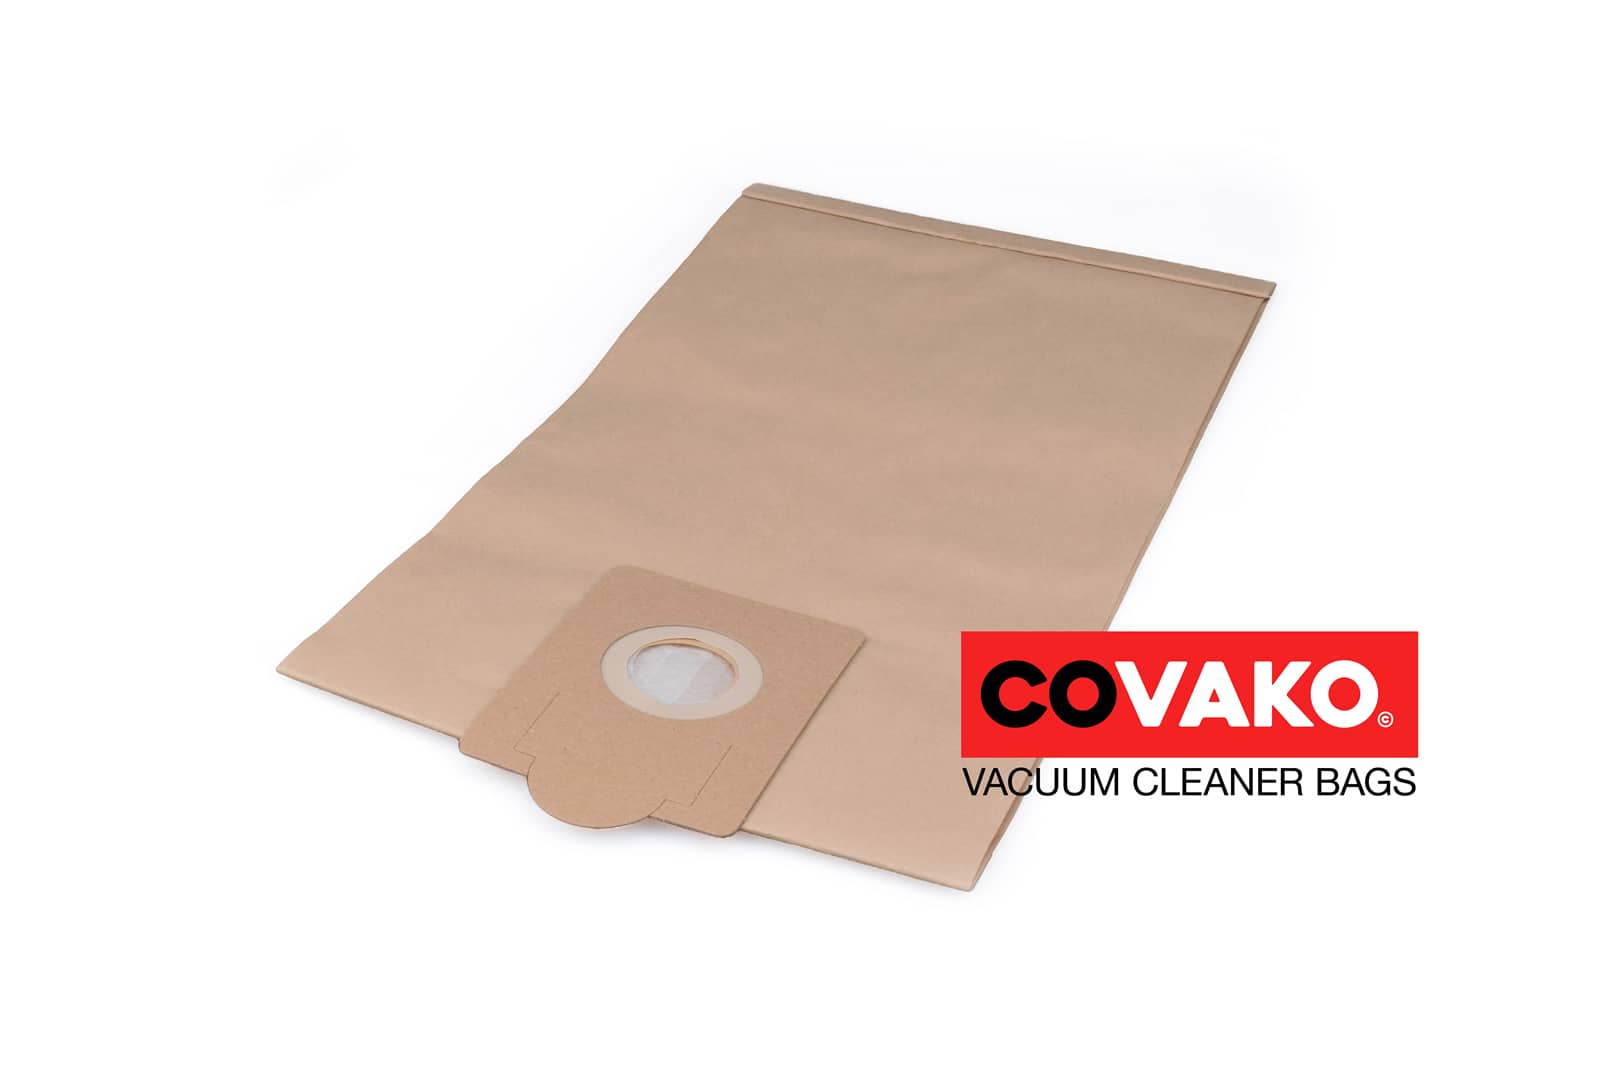 Fakir S 30 / Paper - Fakir vacuum cleaner bags